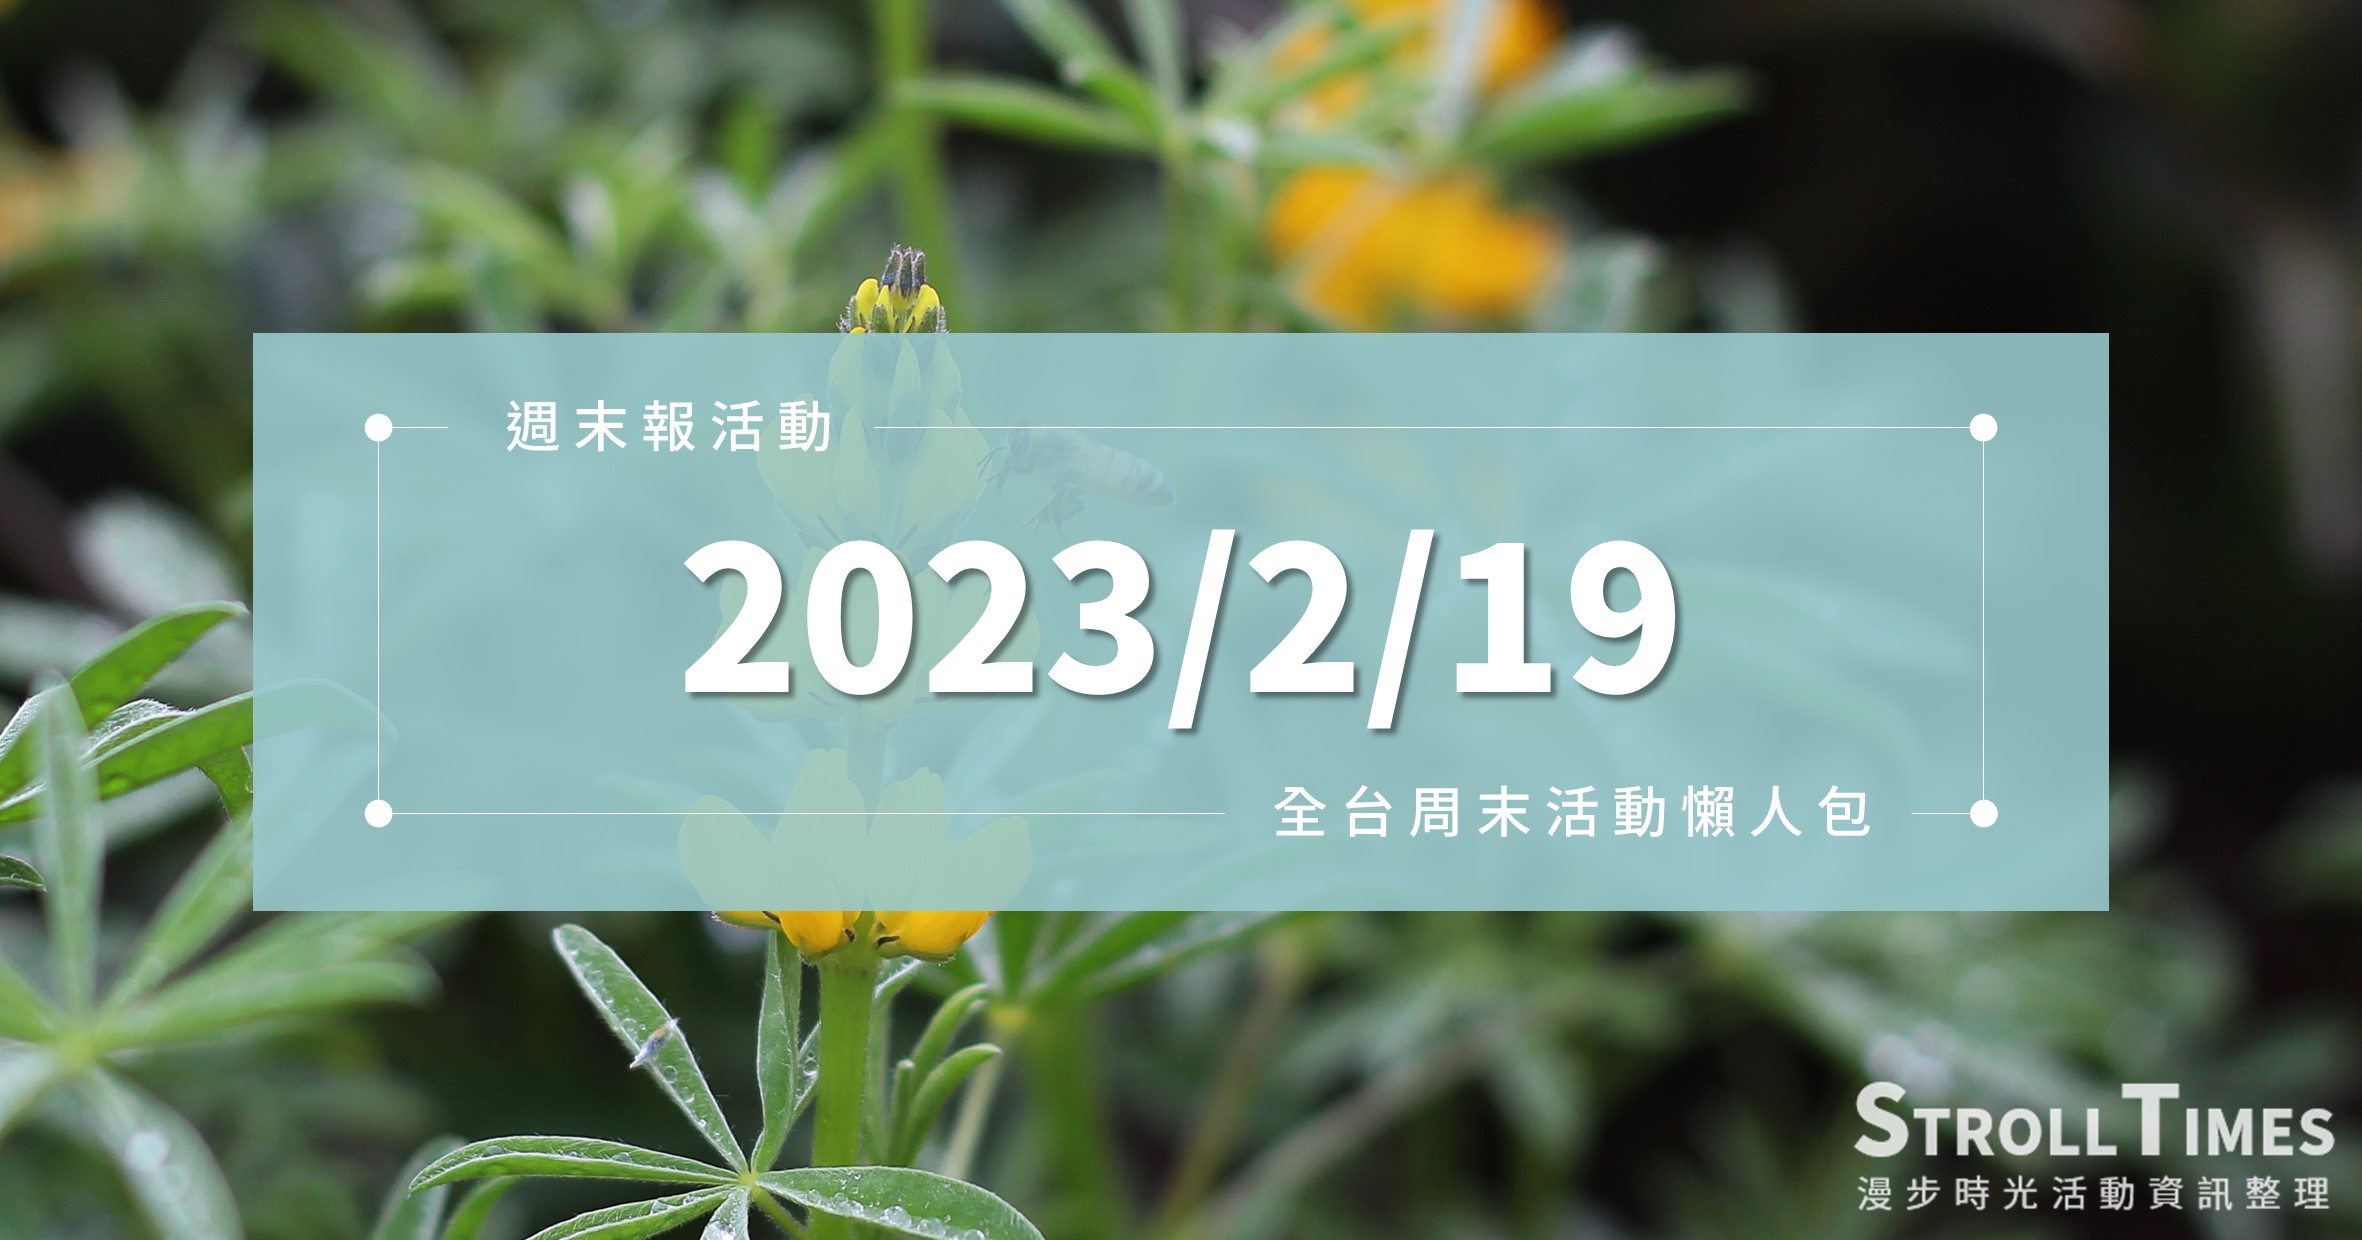 週末活動》全台「2023/2/19」週日活動整理 @漫步時光